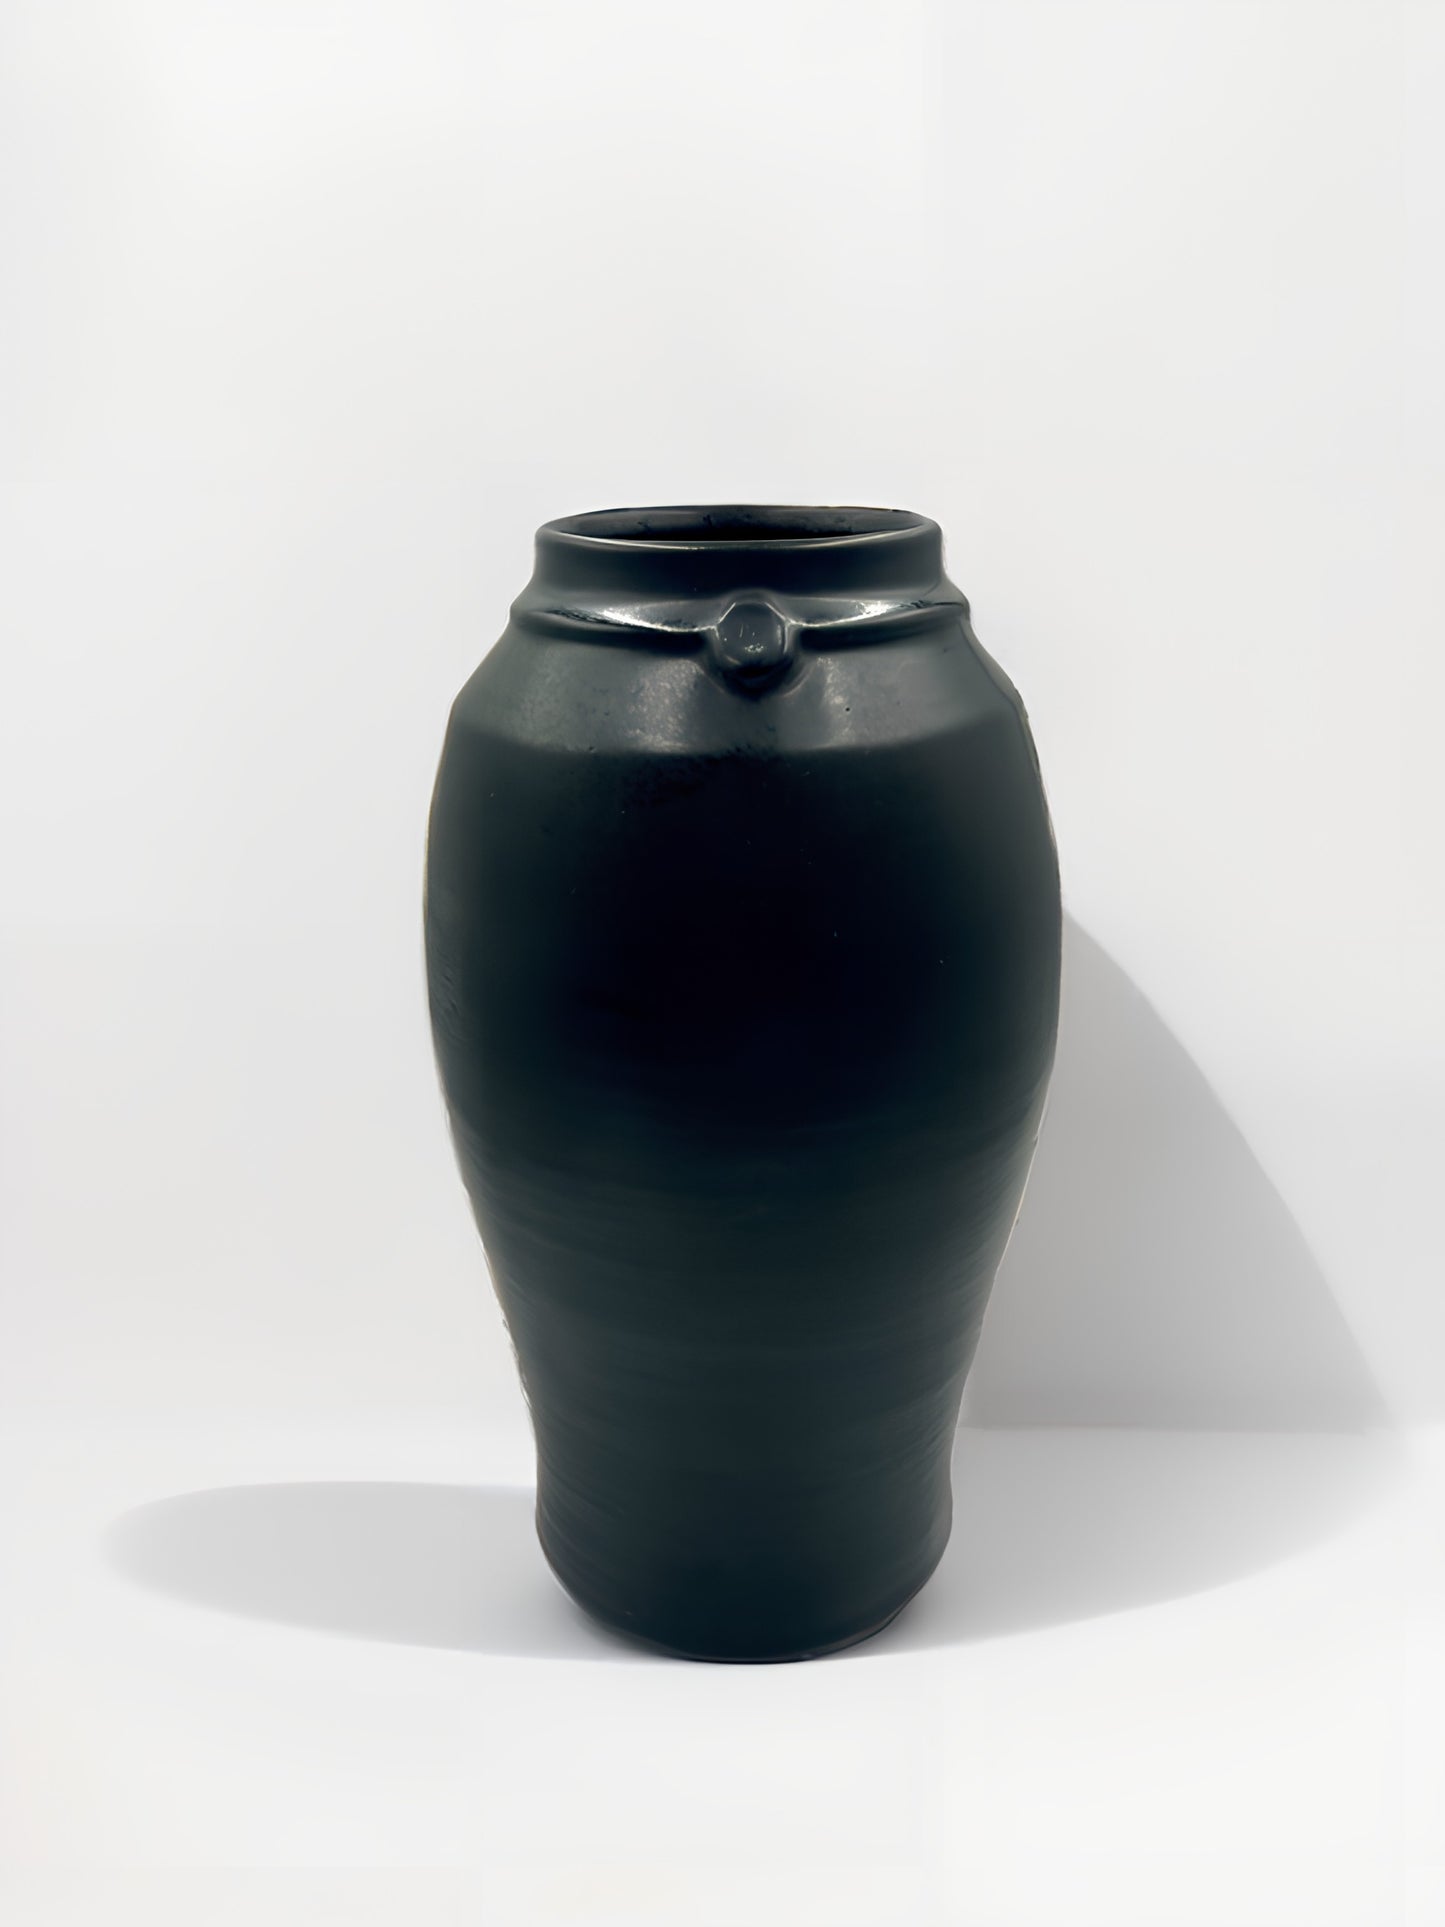 Nicholas Newcomb Banded Vase in Matte Black, Large